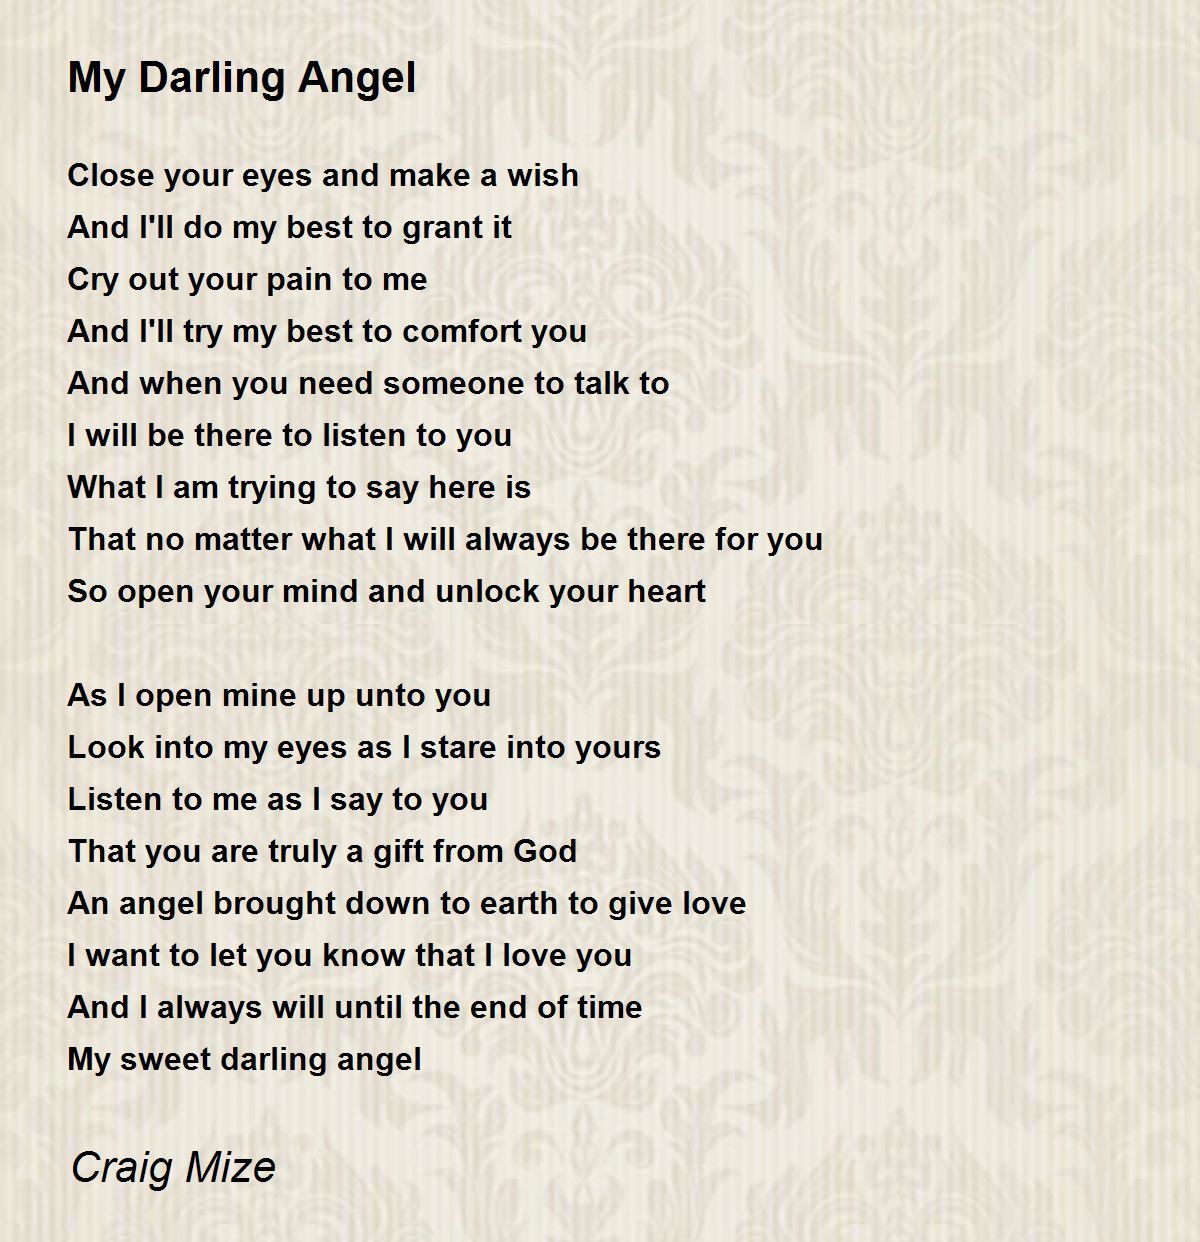 My Darling Angel - My Darling Angel Poem by Craig Mize